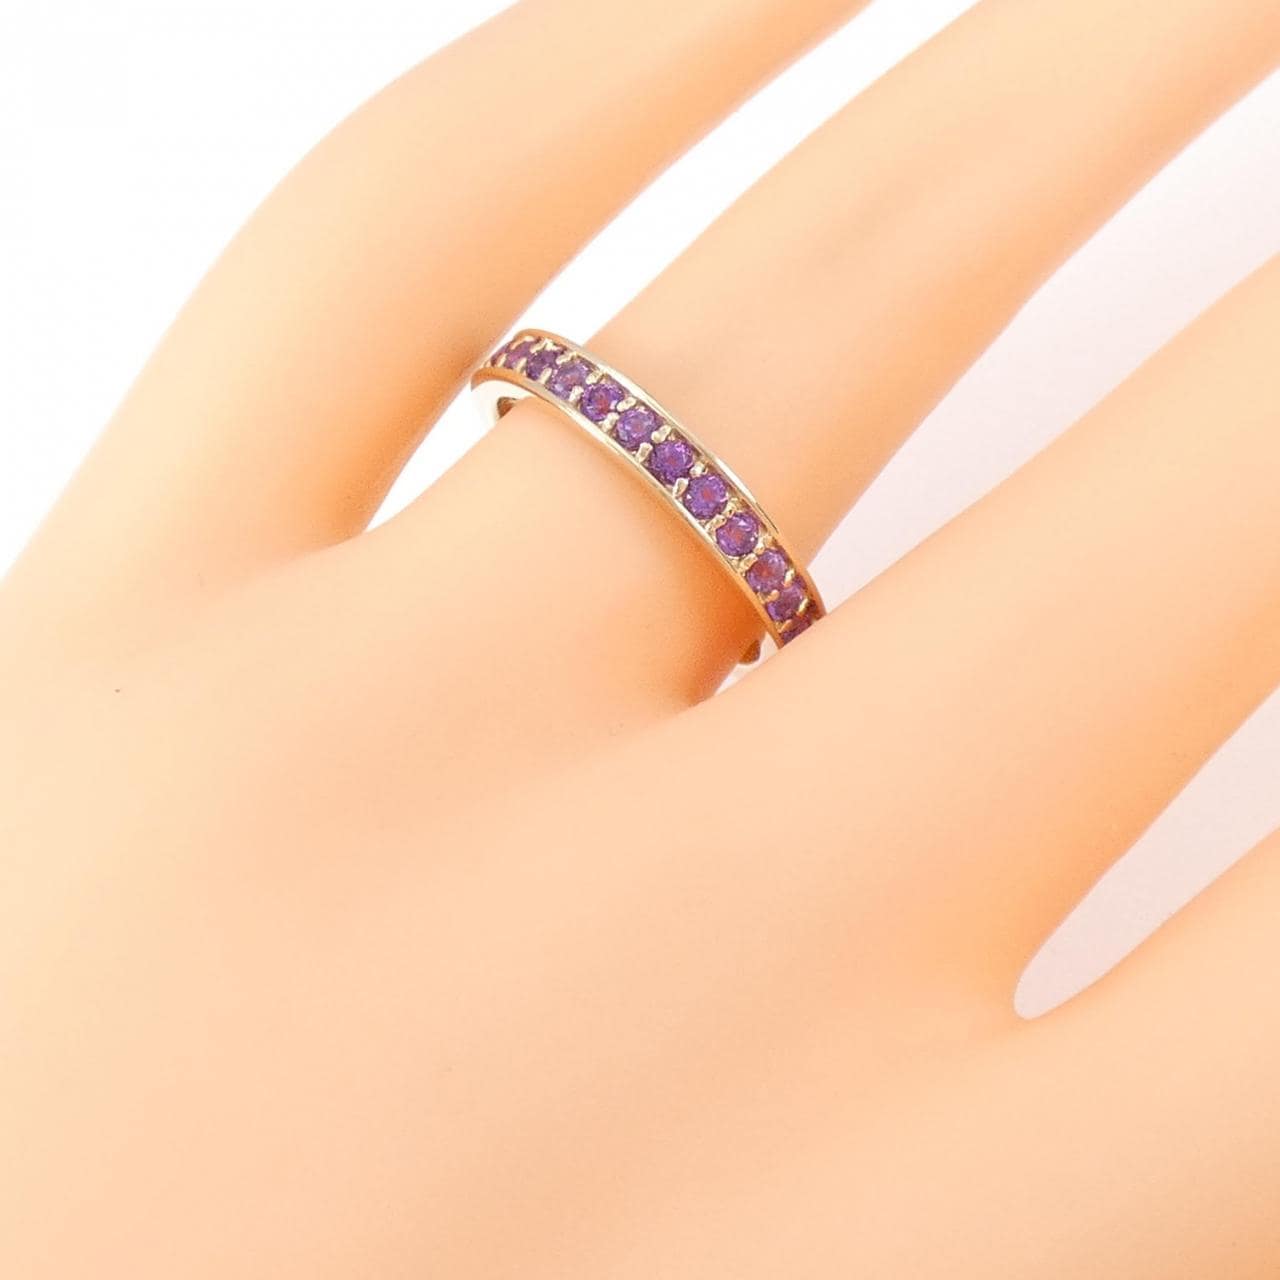 維萊塔奧塔瓦紫水晶戒指